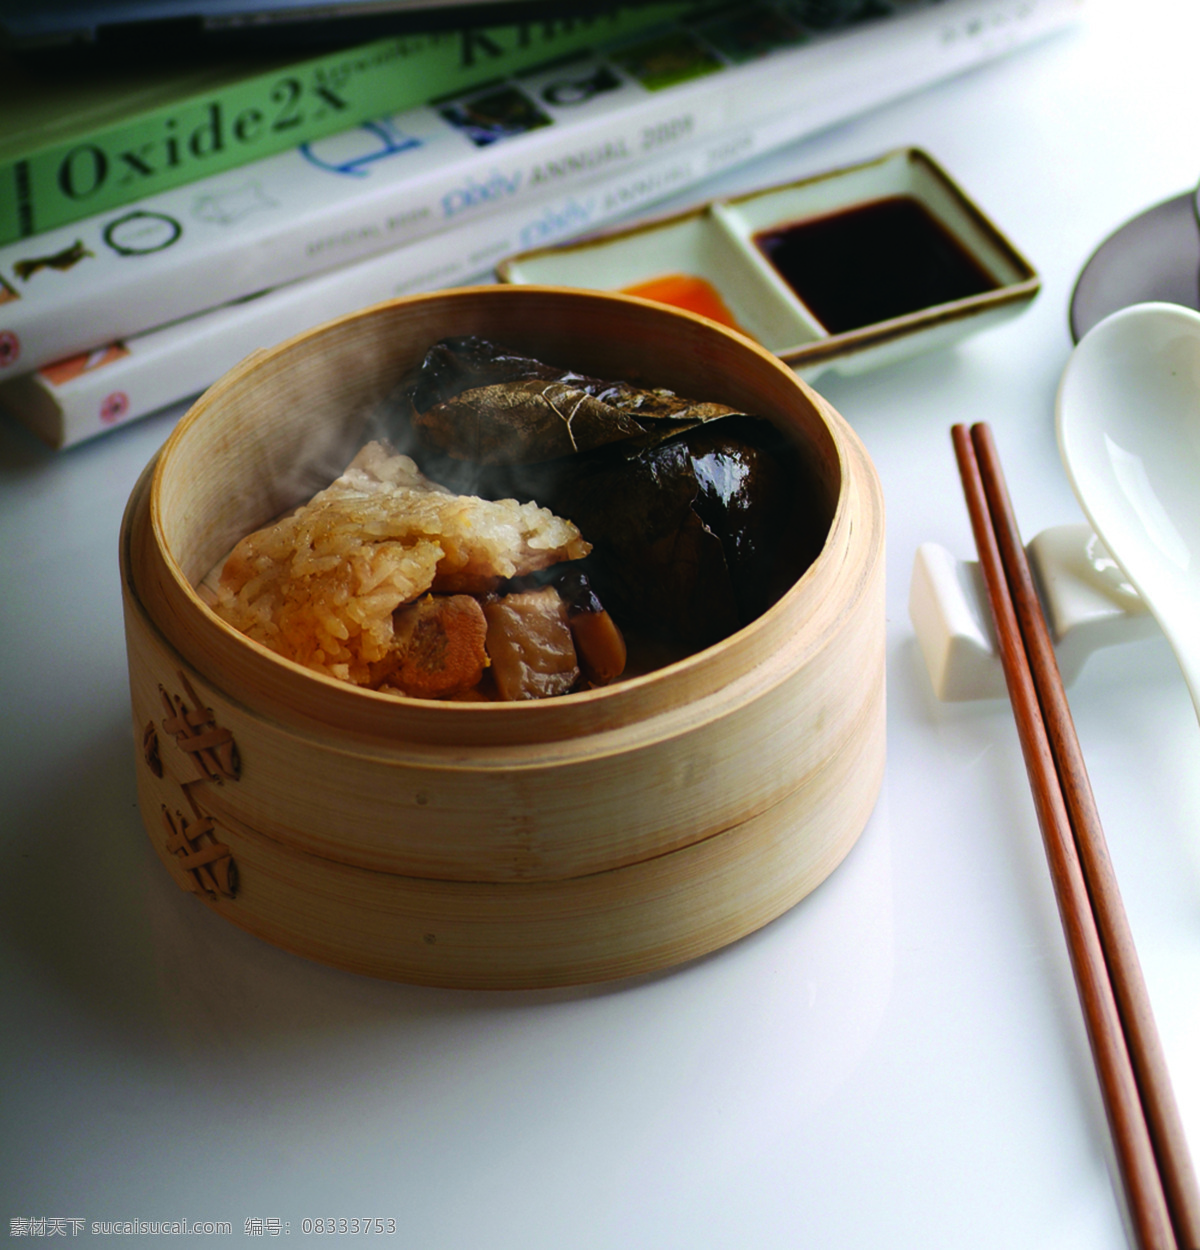 糯米鸡 荷叶 鸡肉 糯米 米饭 筷子 汤匙 酱油 蒸笼 早茶 早点 点心 传统美食 餐饮美食